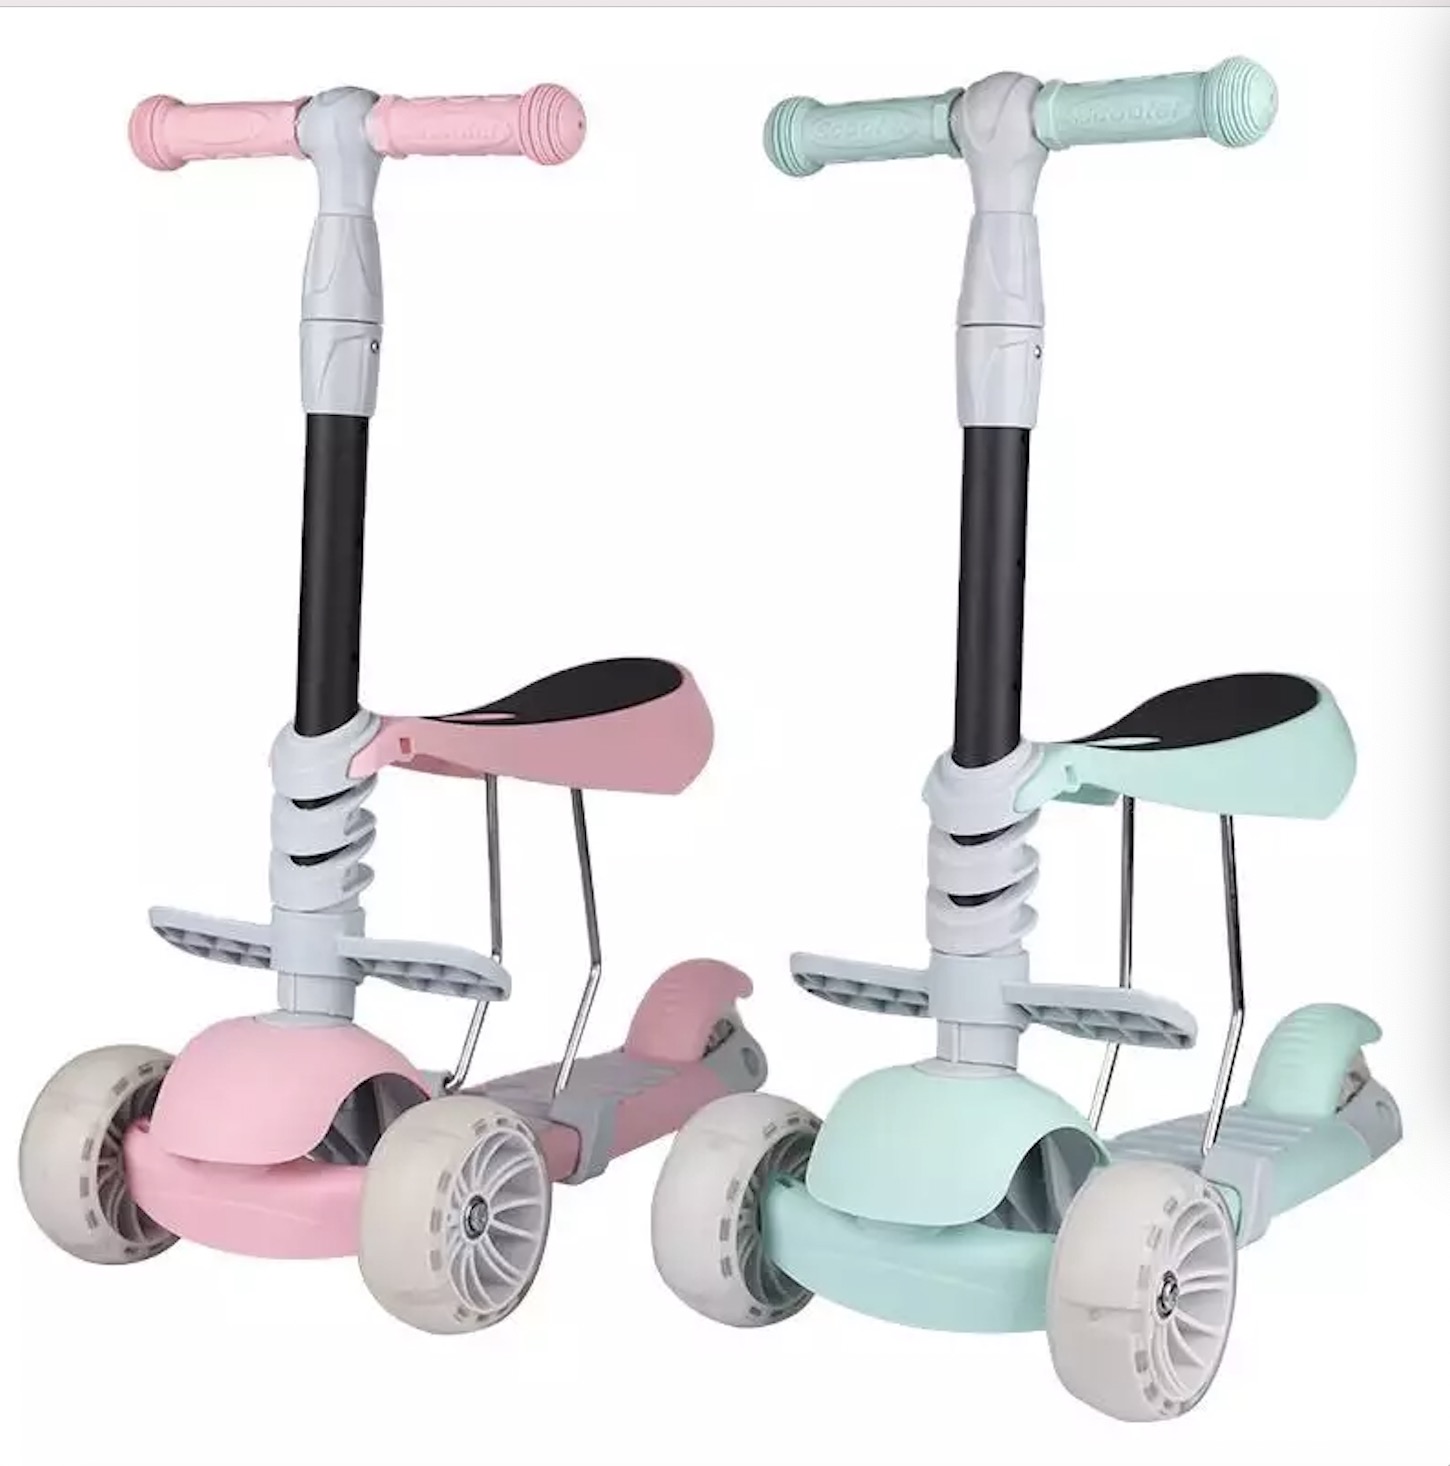 3 In 1 Nā keiki scooter foldable cycle Balance Bike Child Toy 3 In 1 Kids Scooter 3 huila me ka noho keiki Scooter